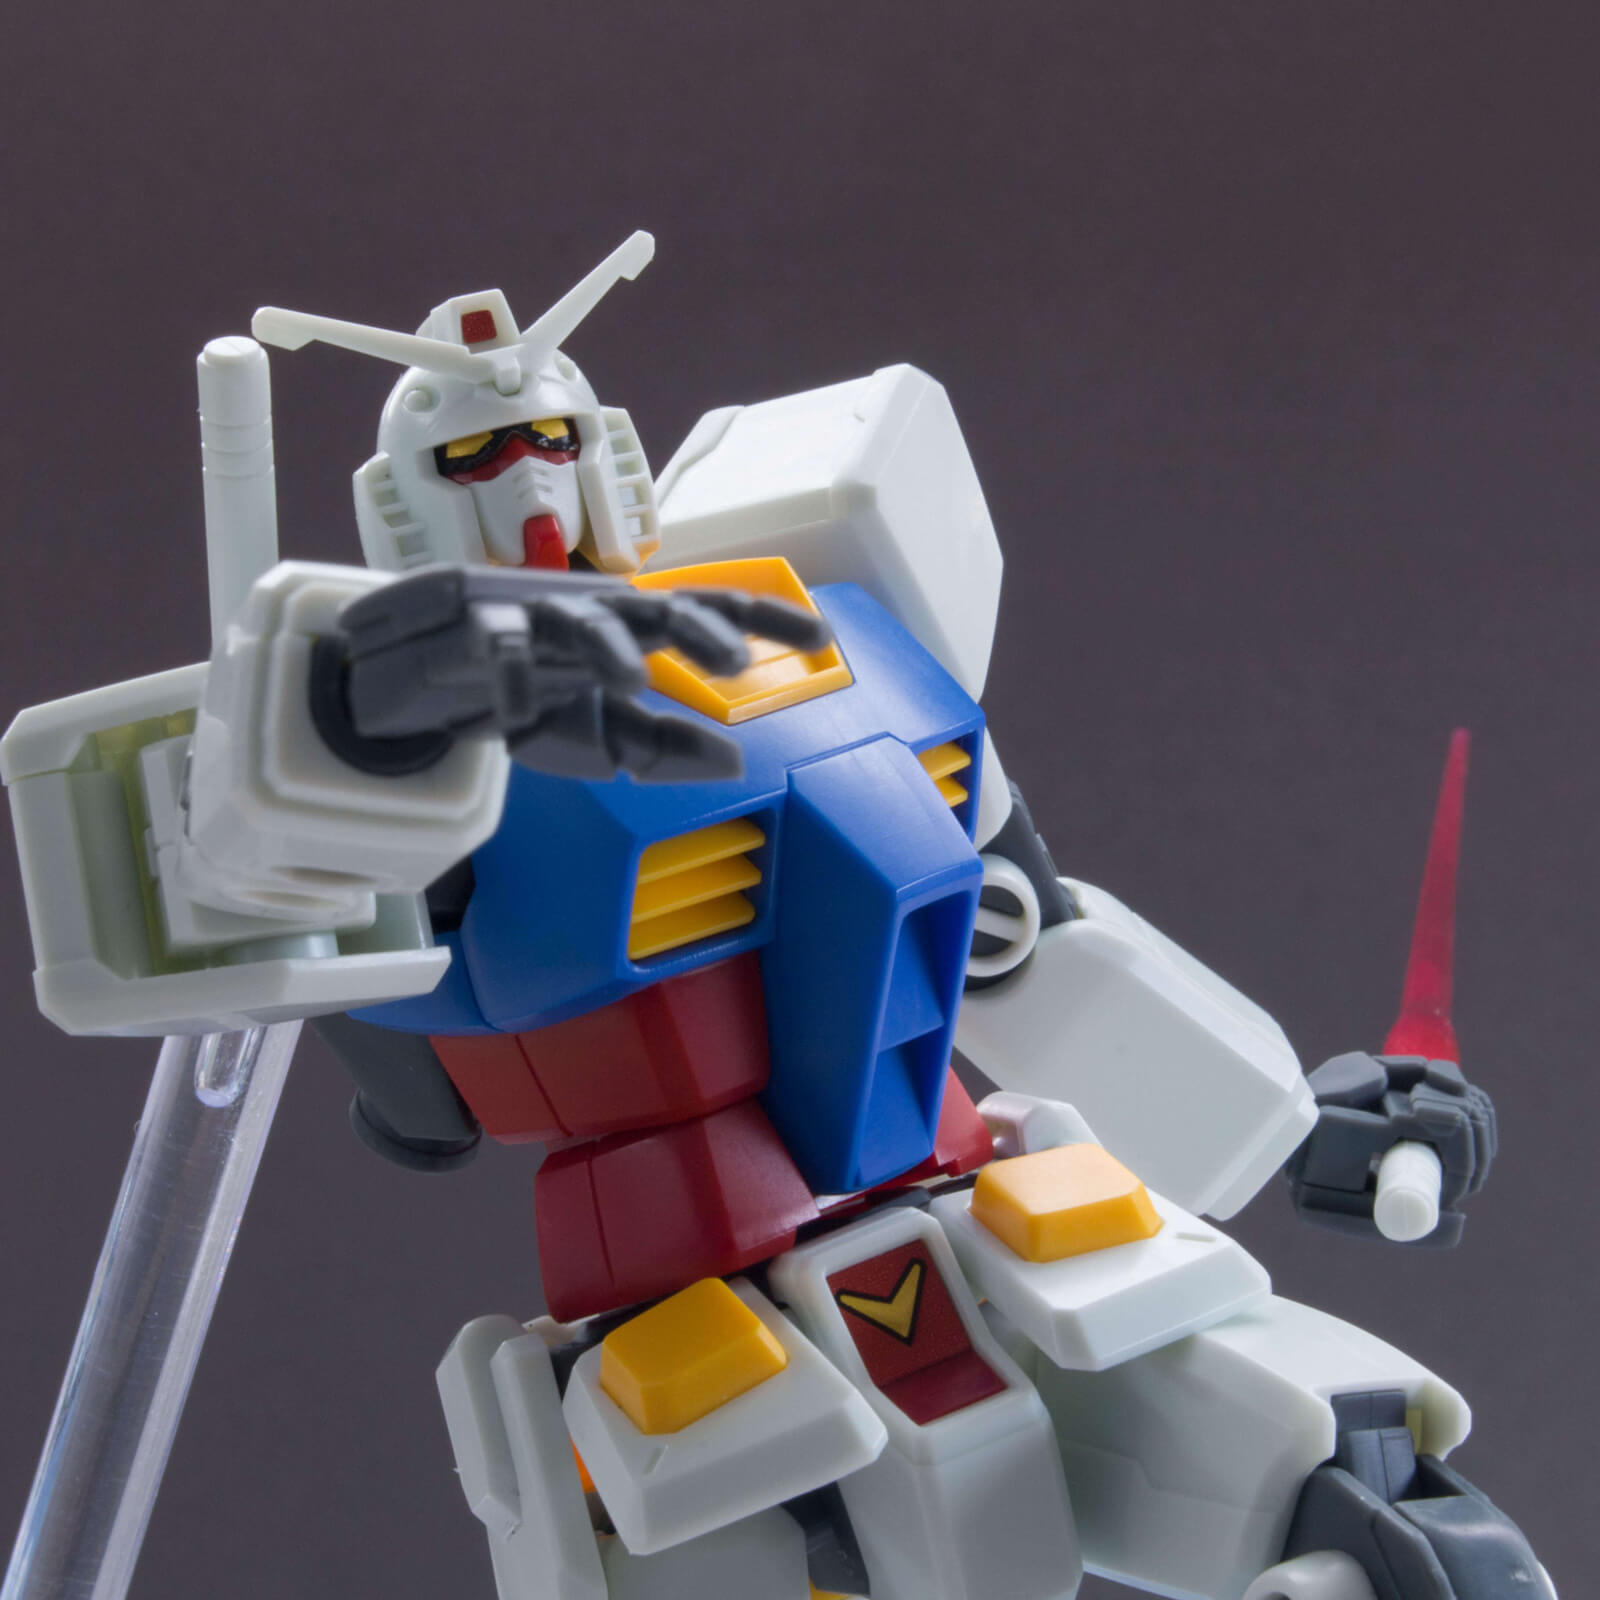 A White RX-78-2 Gundam